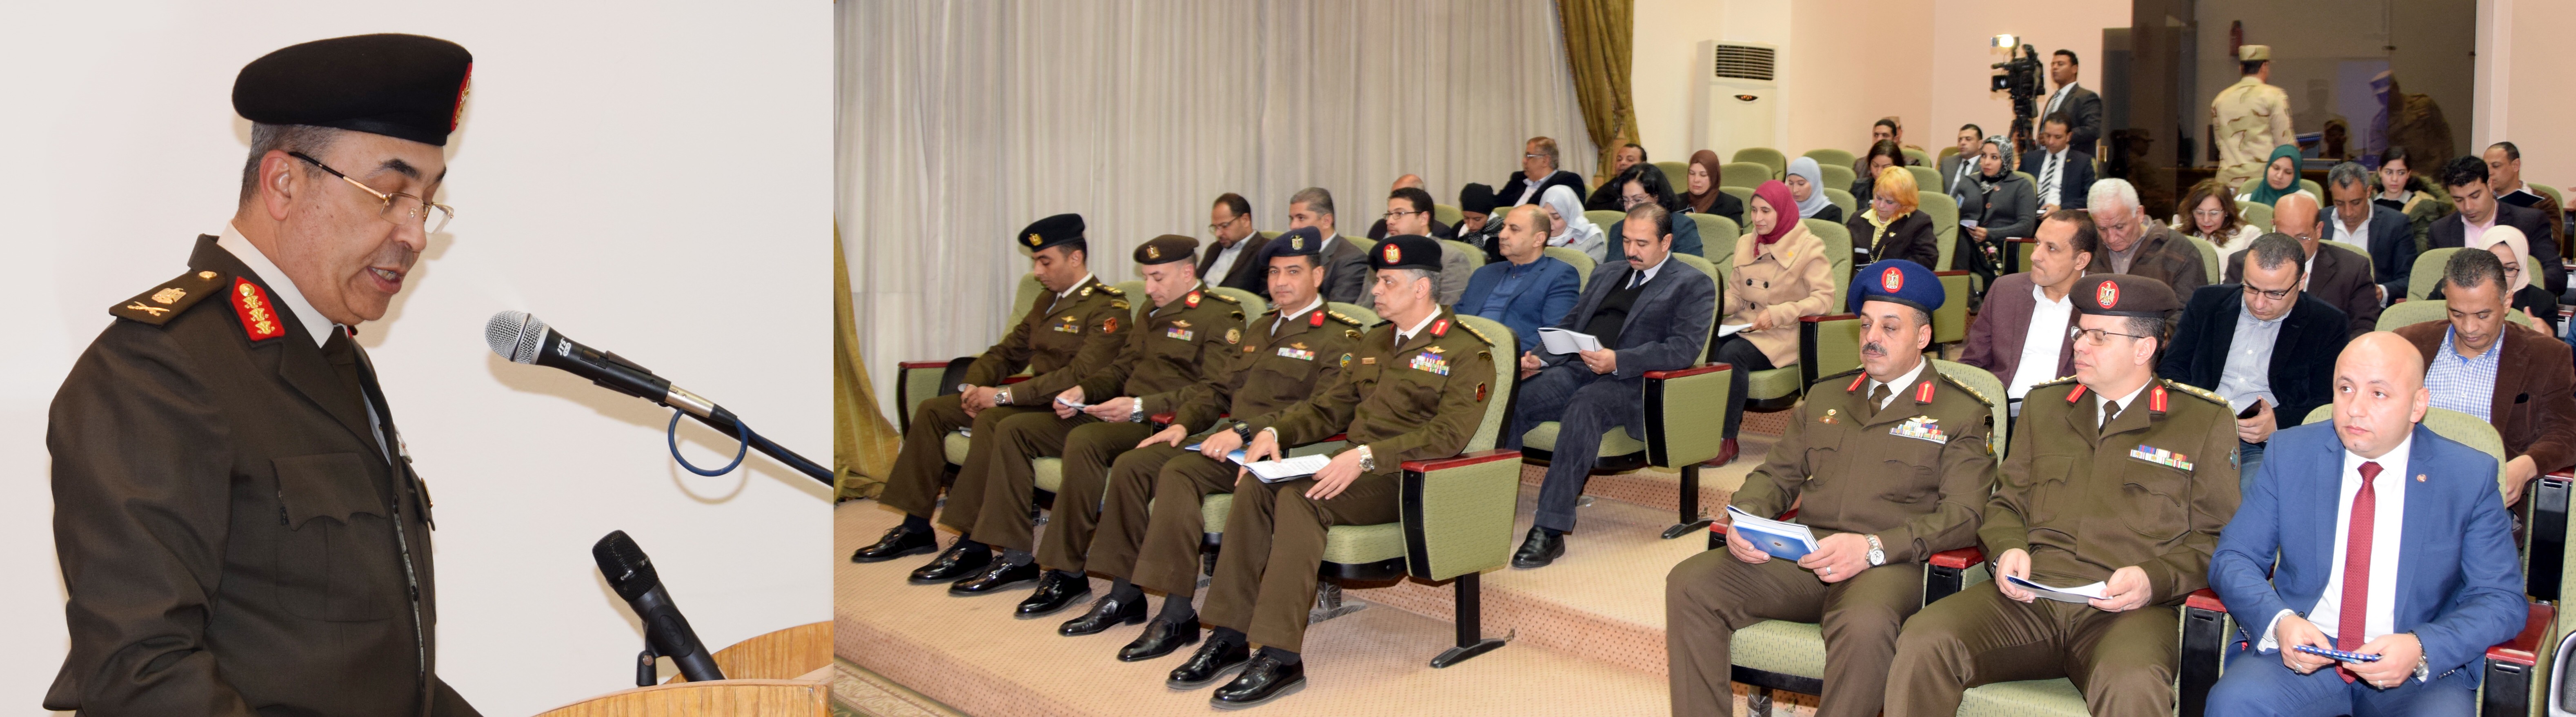 القوات المسلحة تعلن قبول دفعة جديدة من خريجى الجامعات بالكلية الحربية